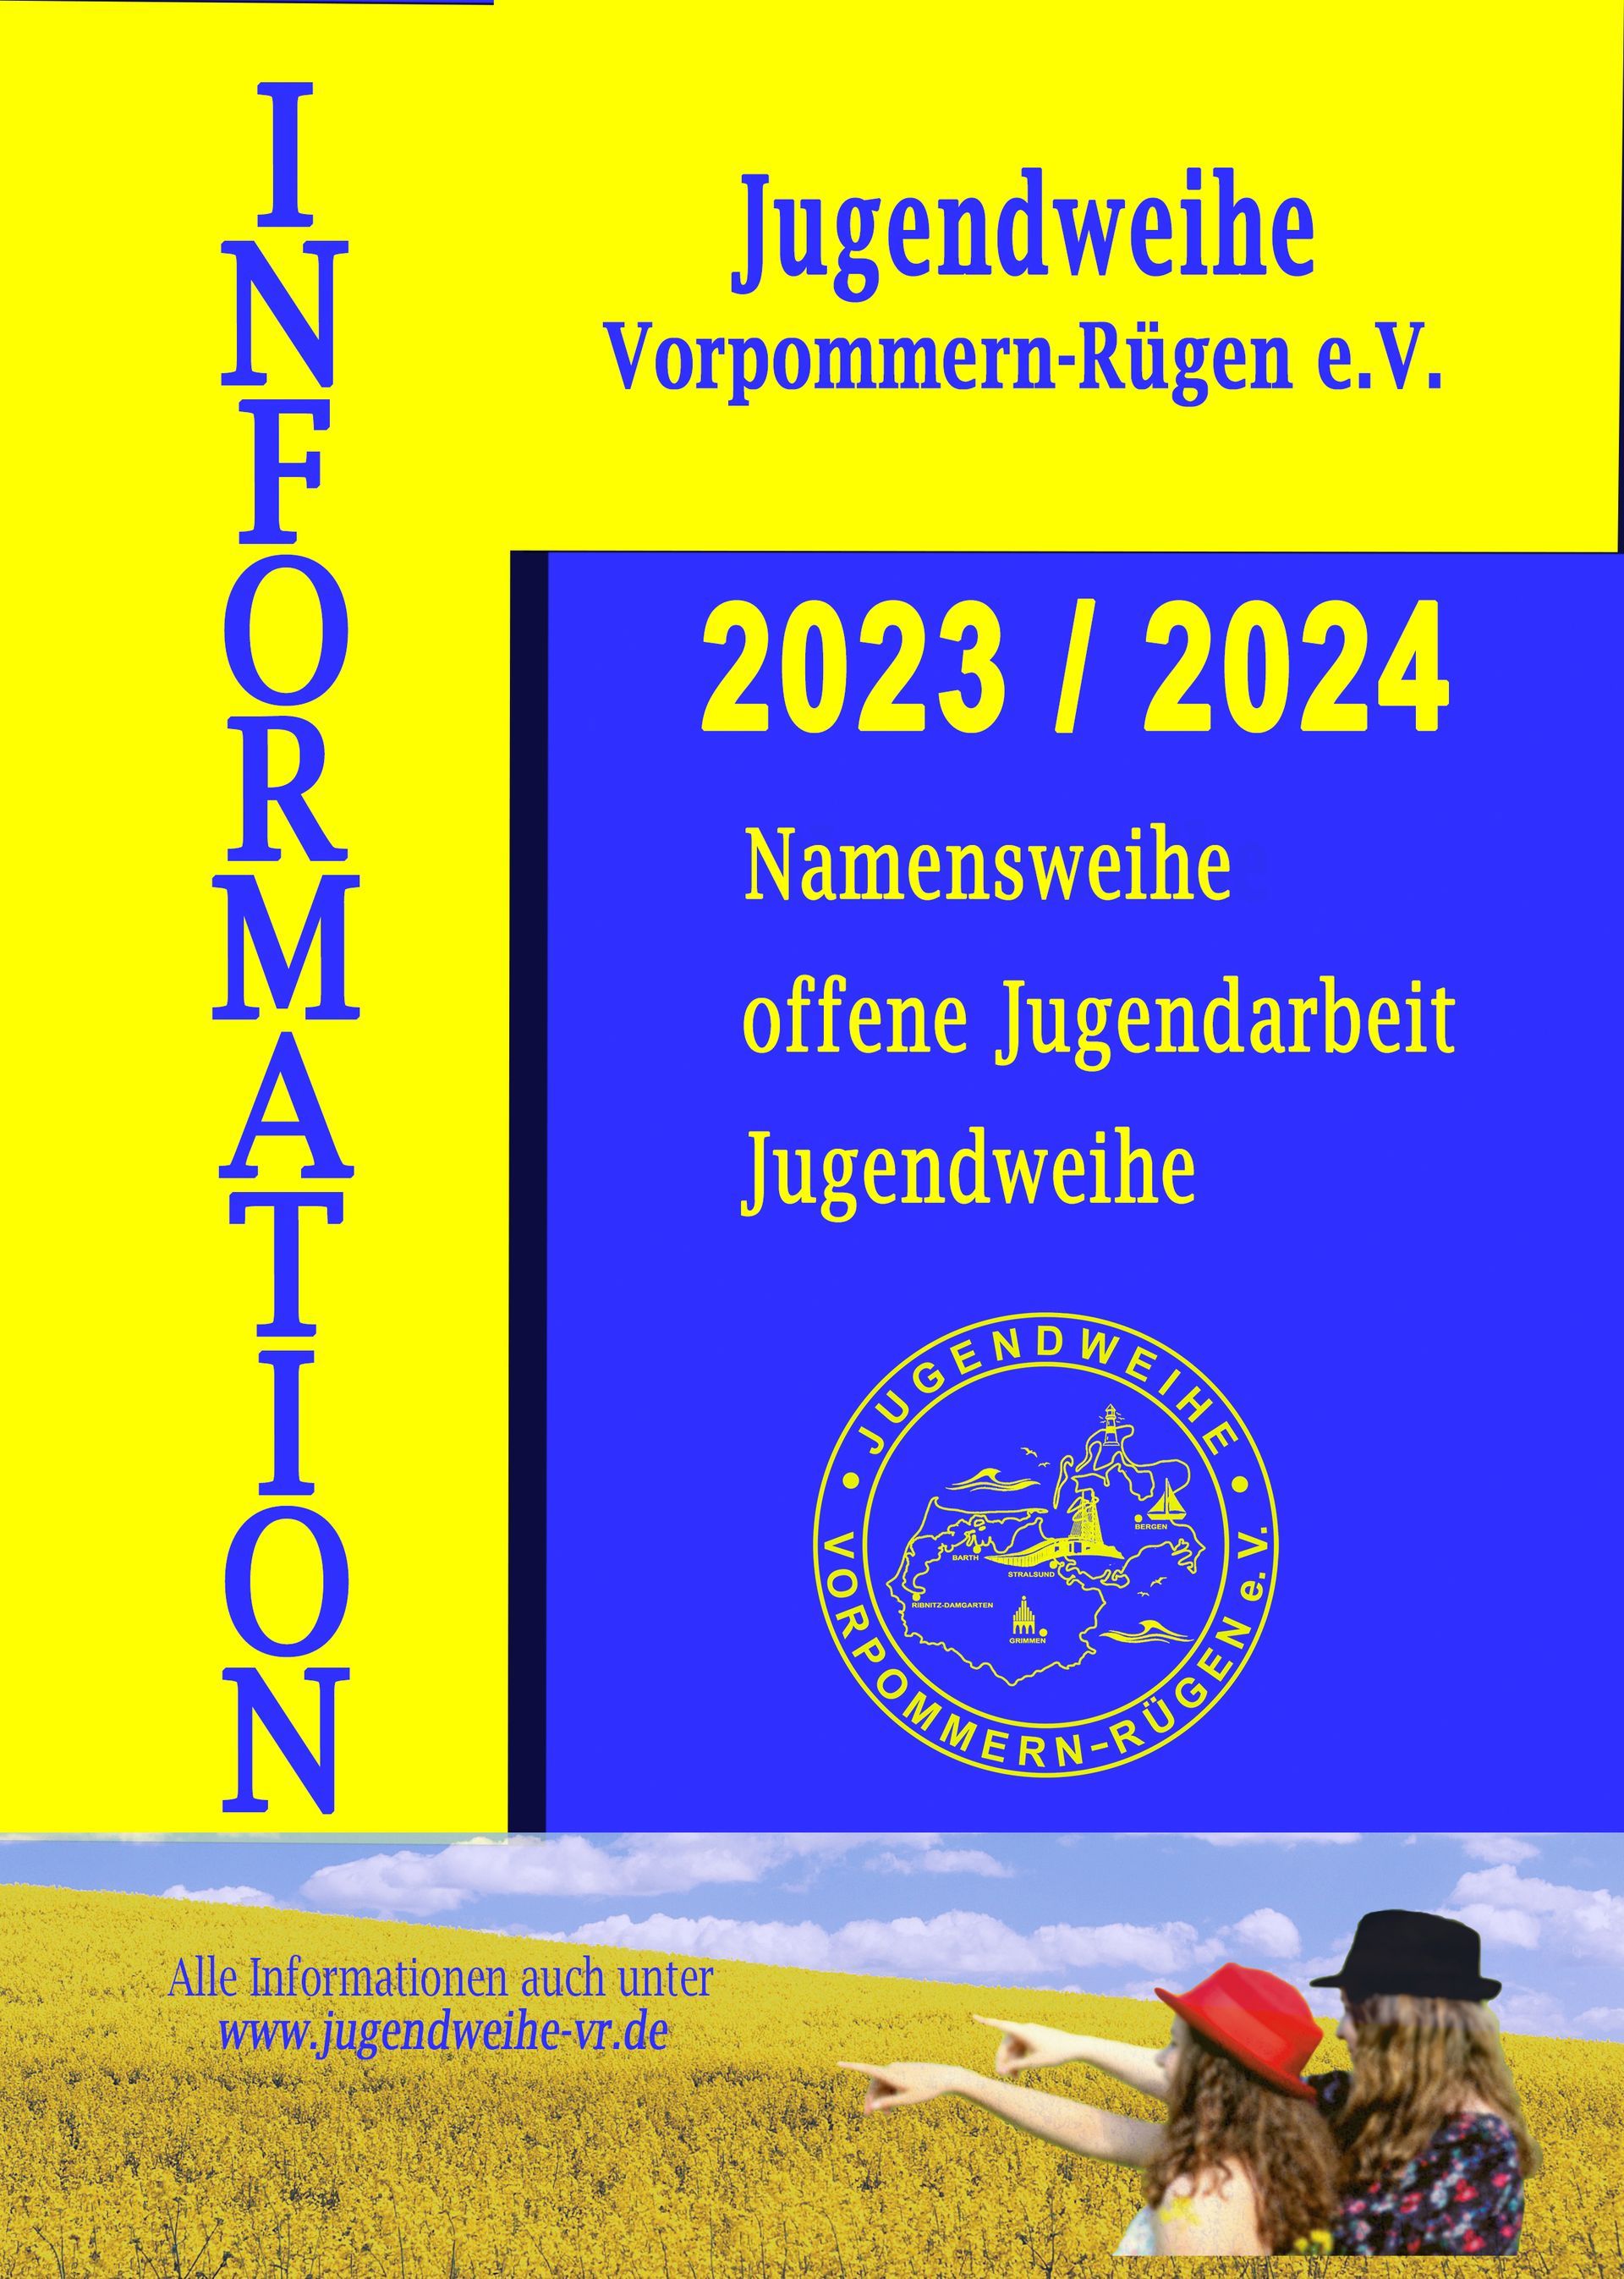 Jugendweihe Vorpommern-Rügen e.V.